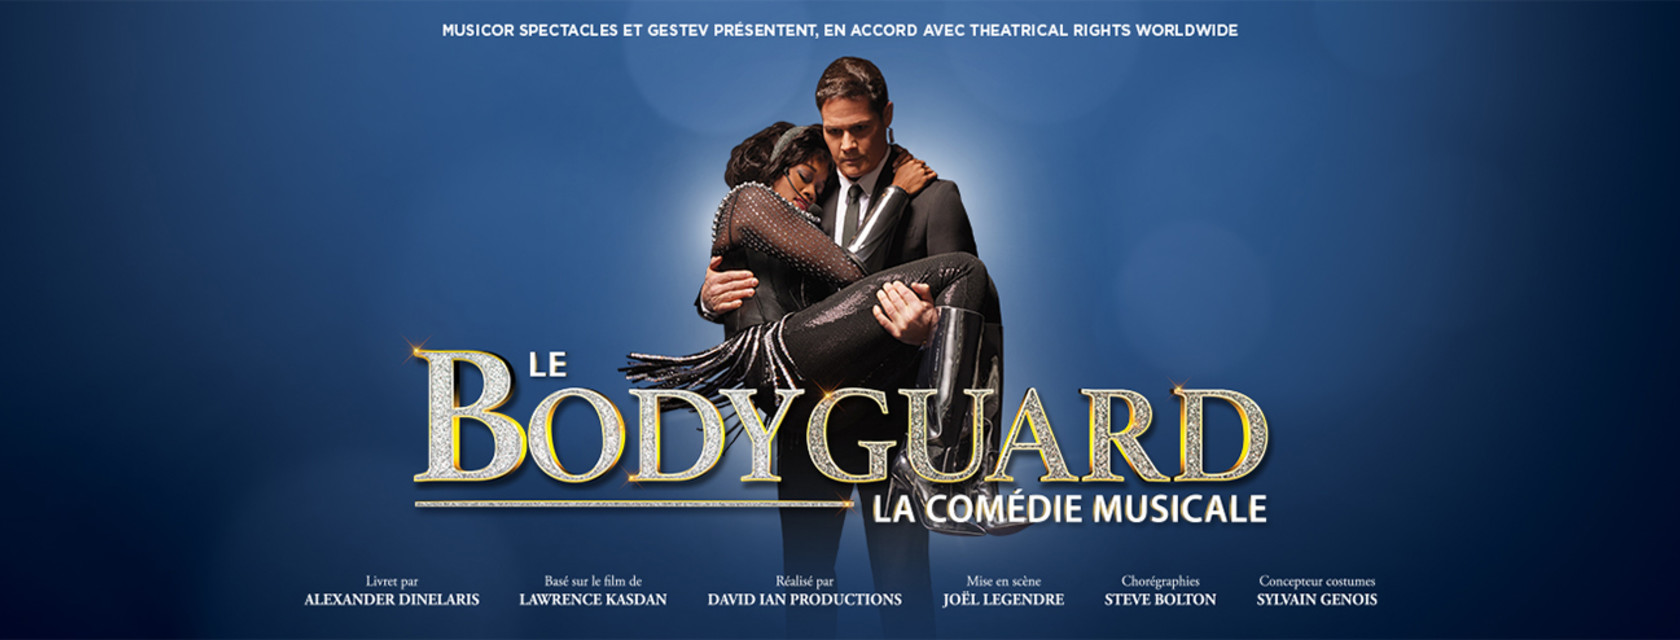 La comédie musicale Le Bodyguard sur la scène extérieure de l’Amphithéâtre Cogeco en 2023!   